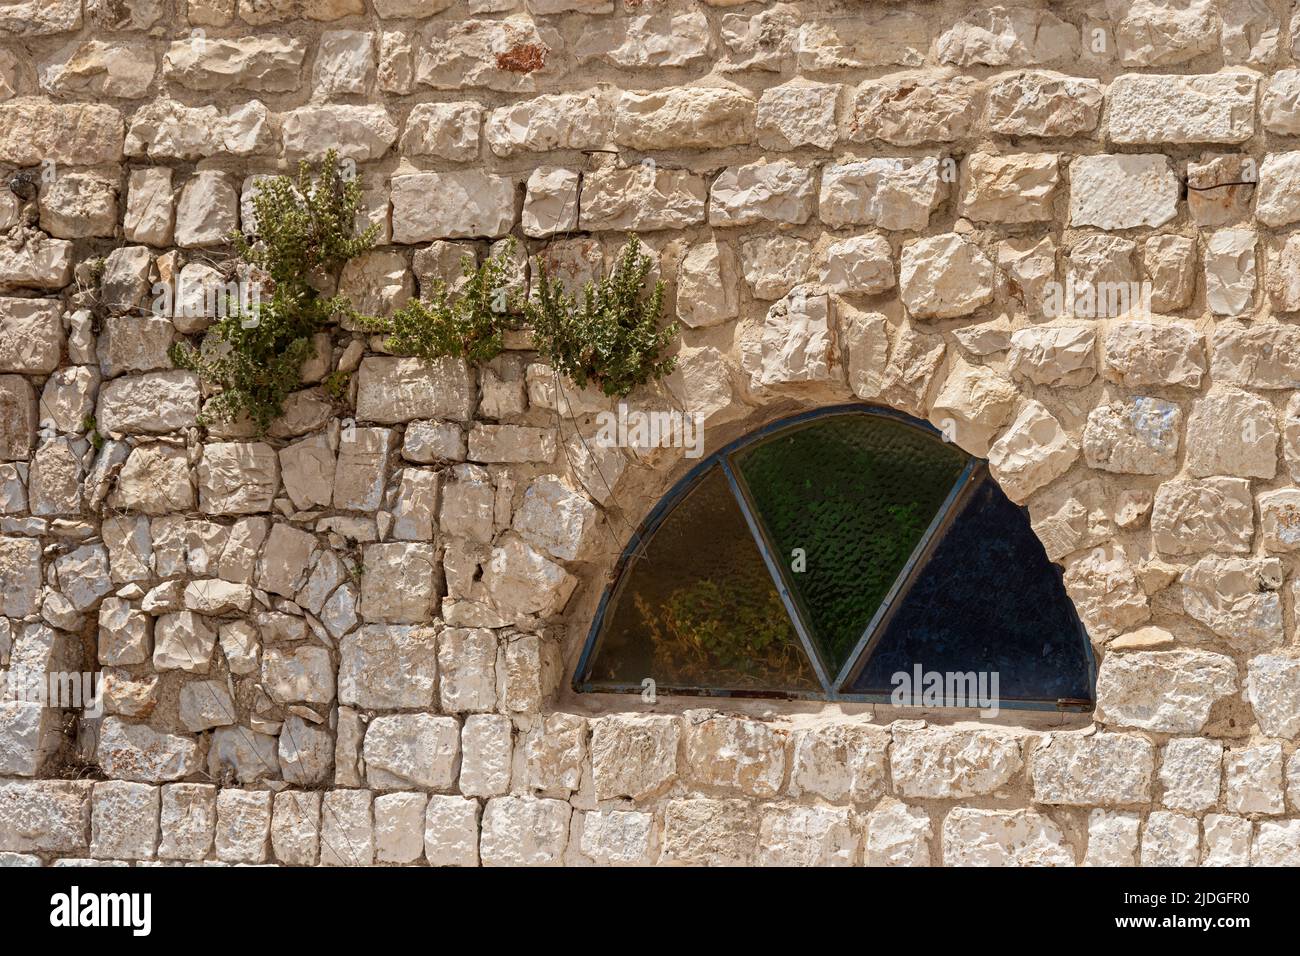 Pflanzen wachsen in Rissen in einer uralten Kalksteinwand in Safed Tsfat in Israel neben einem Halbkreisfenster mit farbigen Glasdreiecken Stockfoto